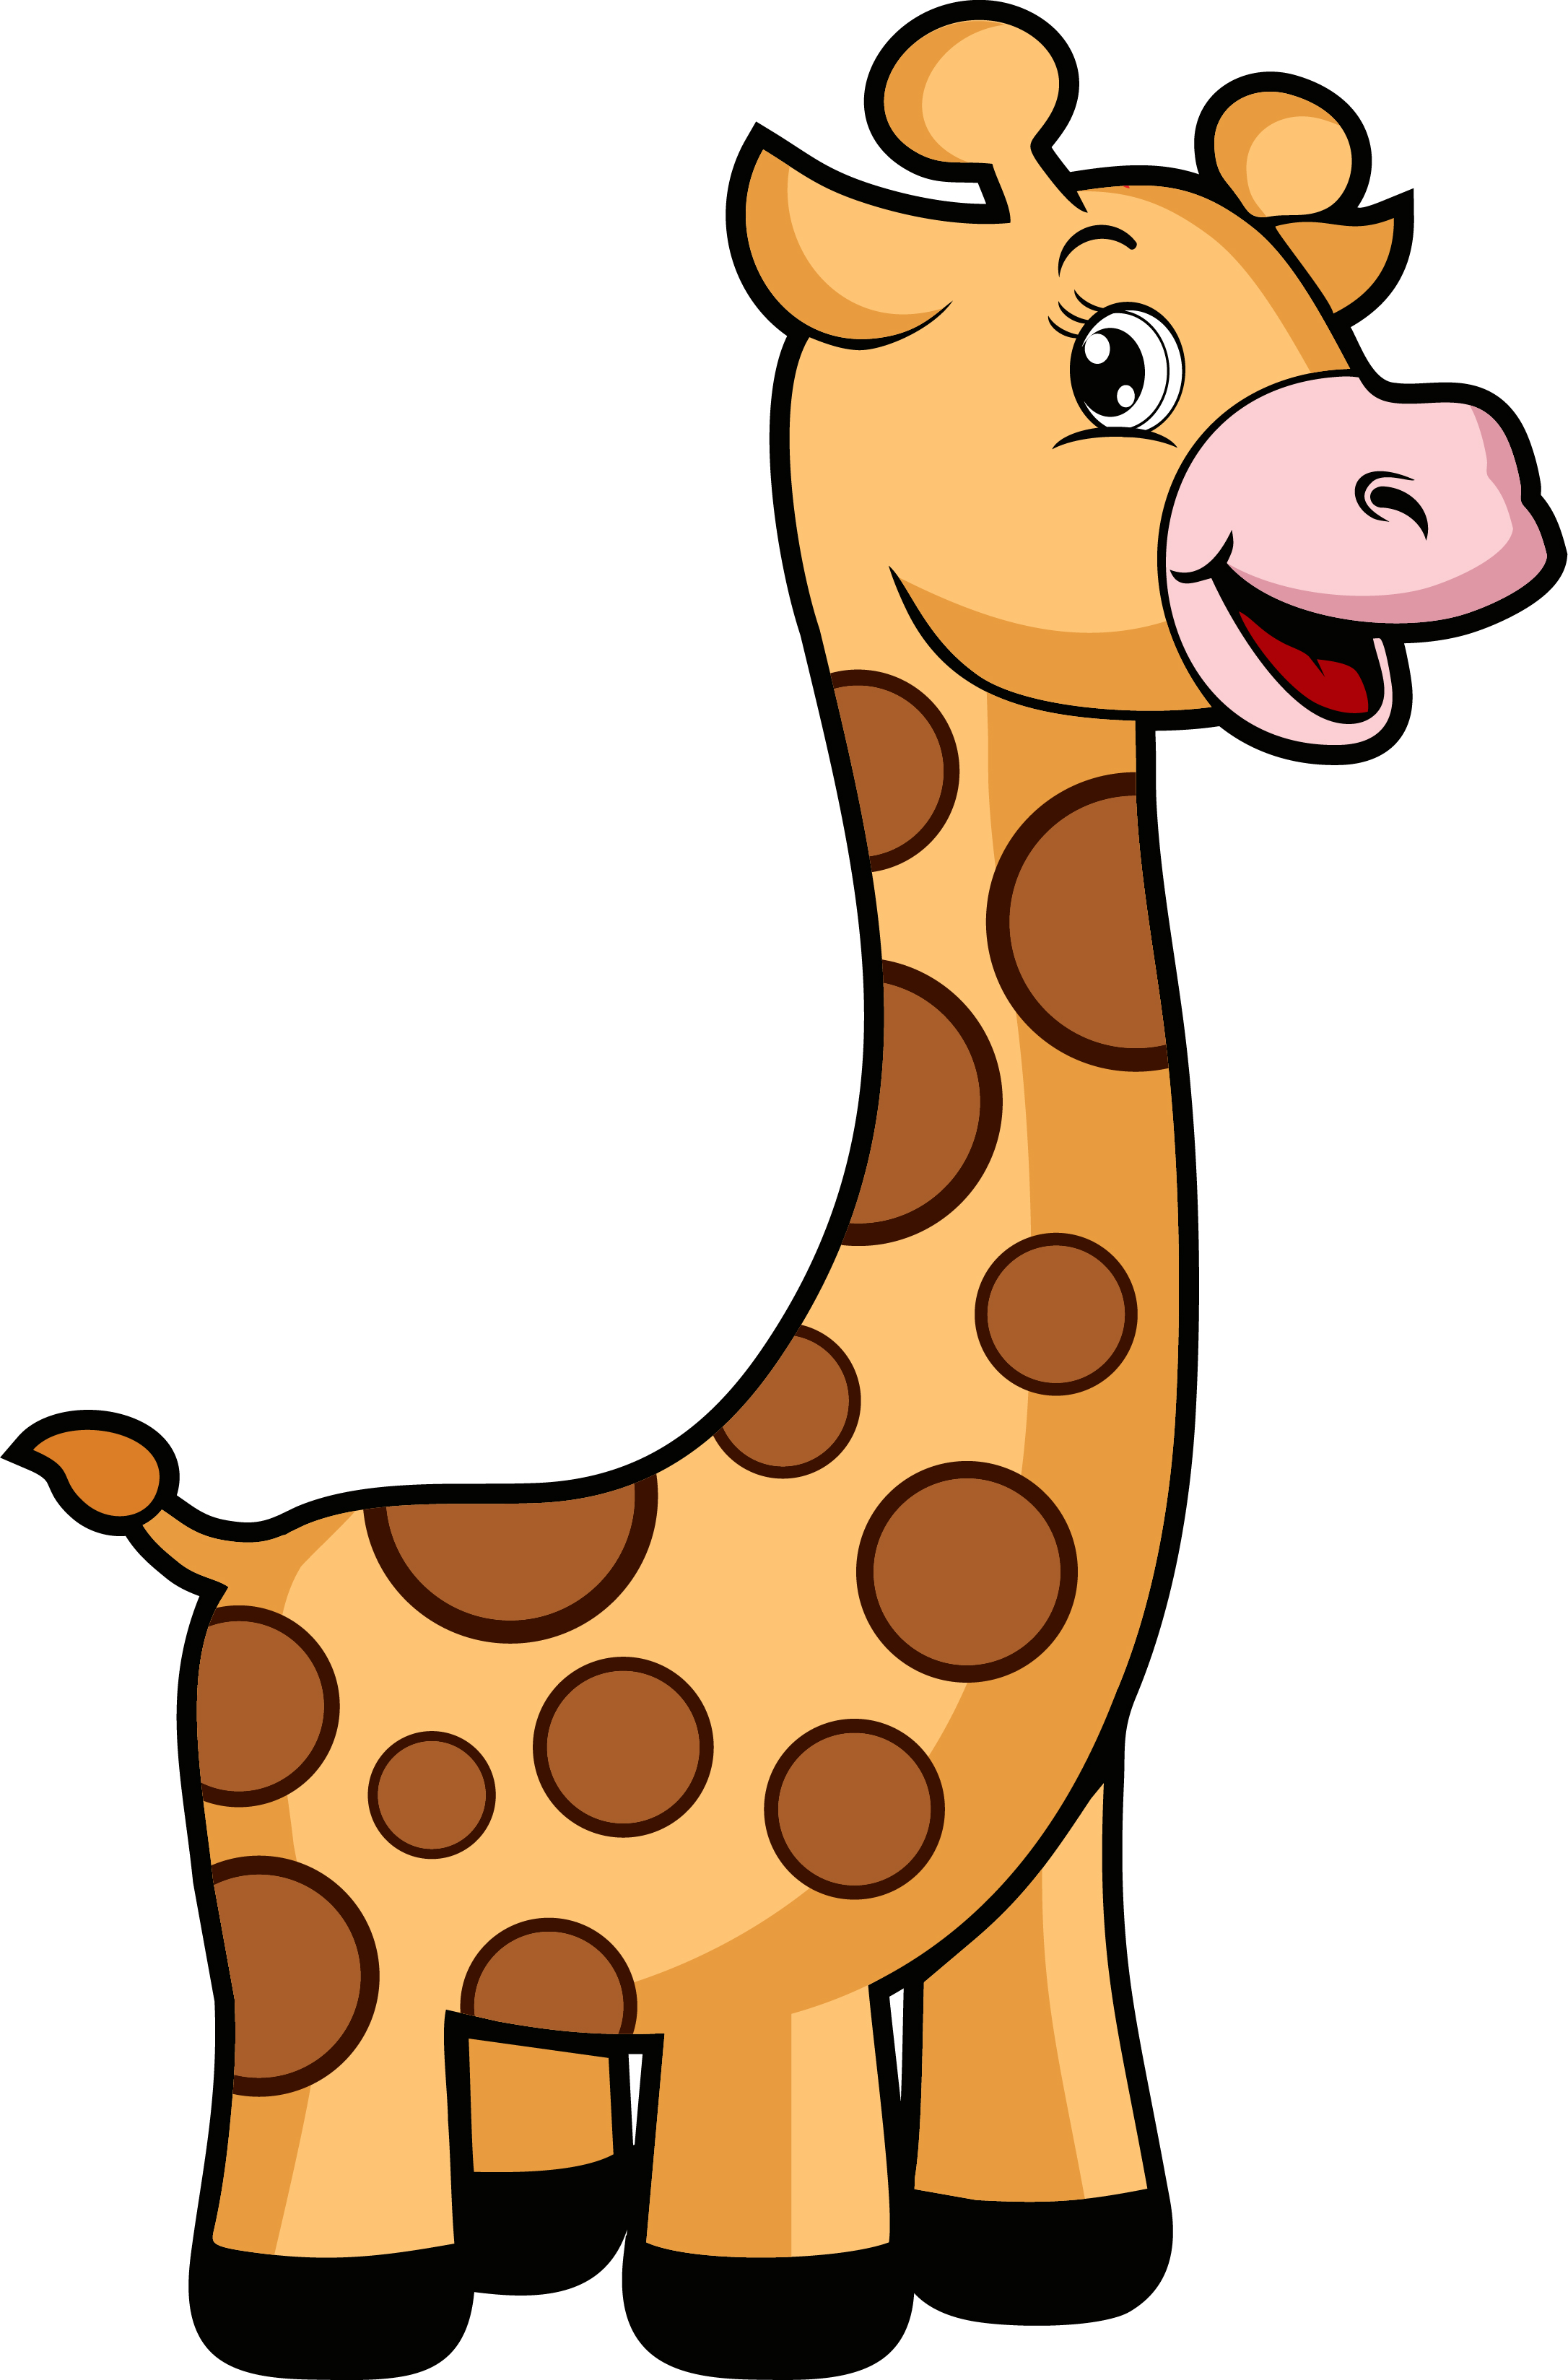 Образец раскрашенной картинки игрушка жираф